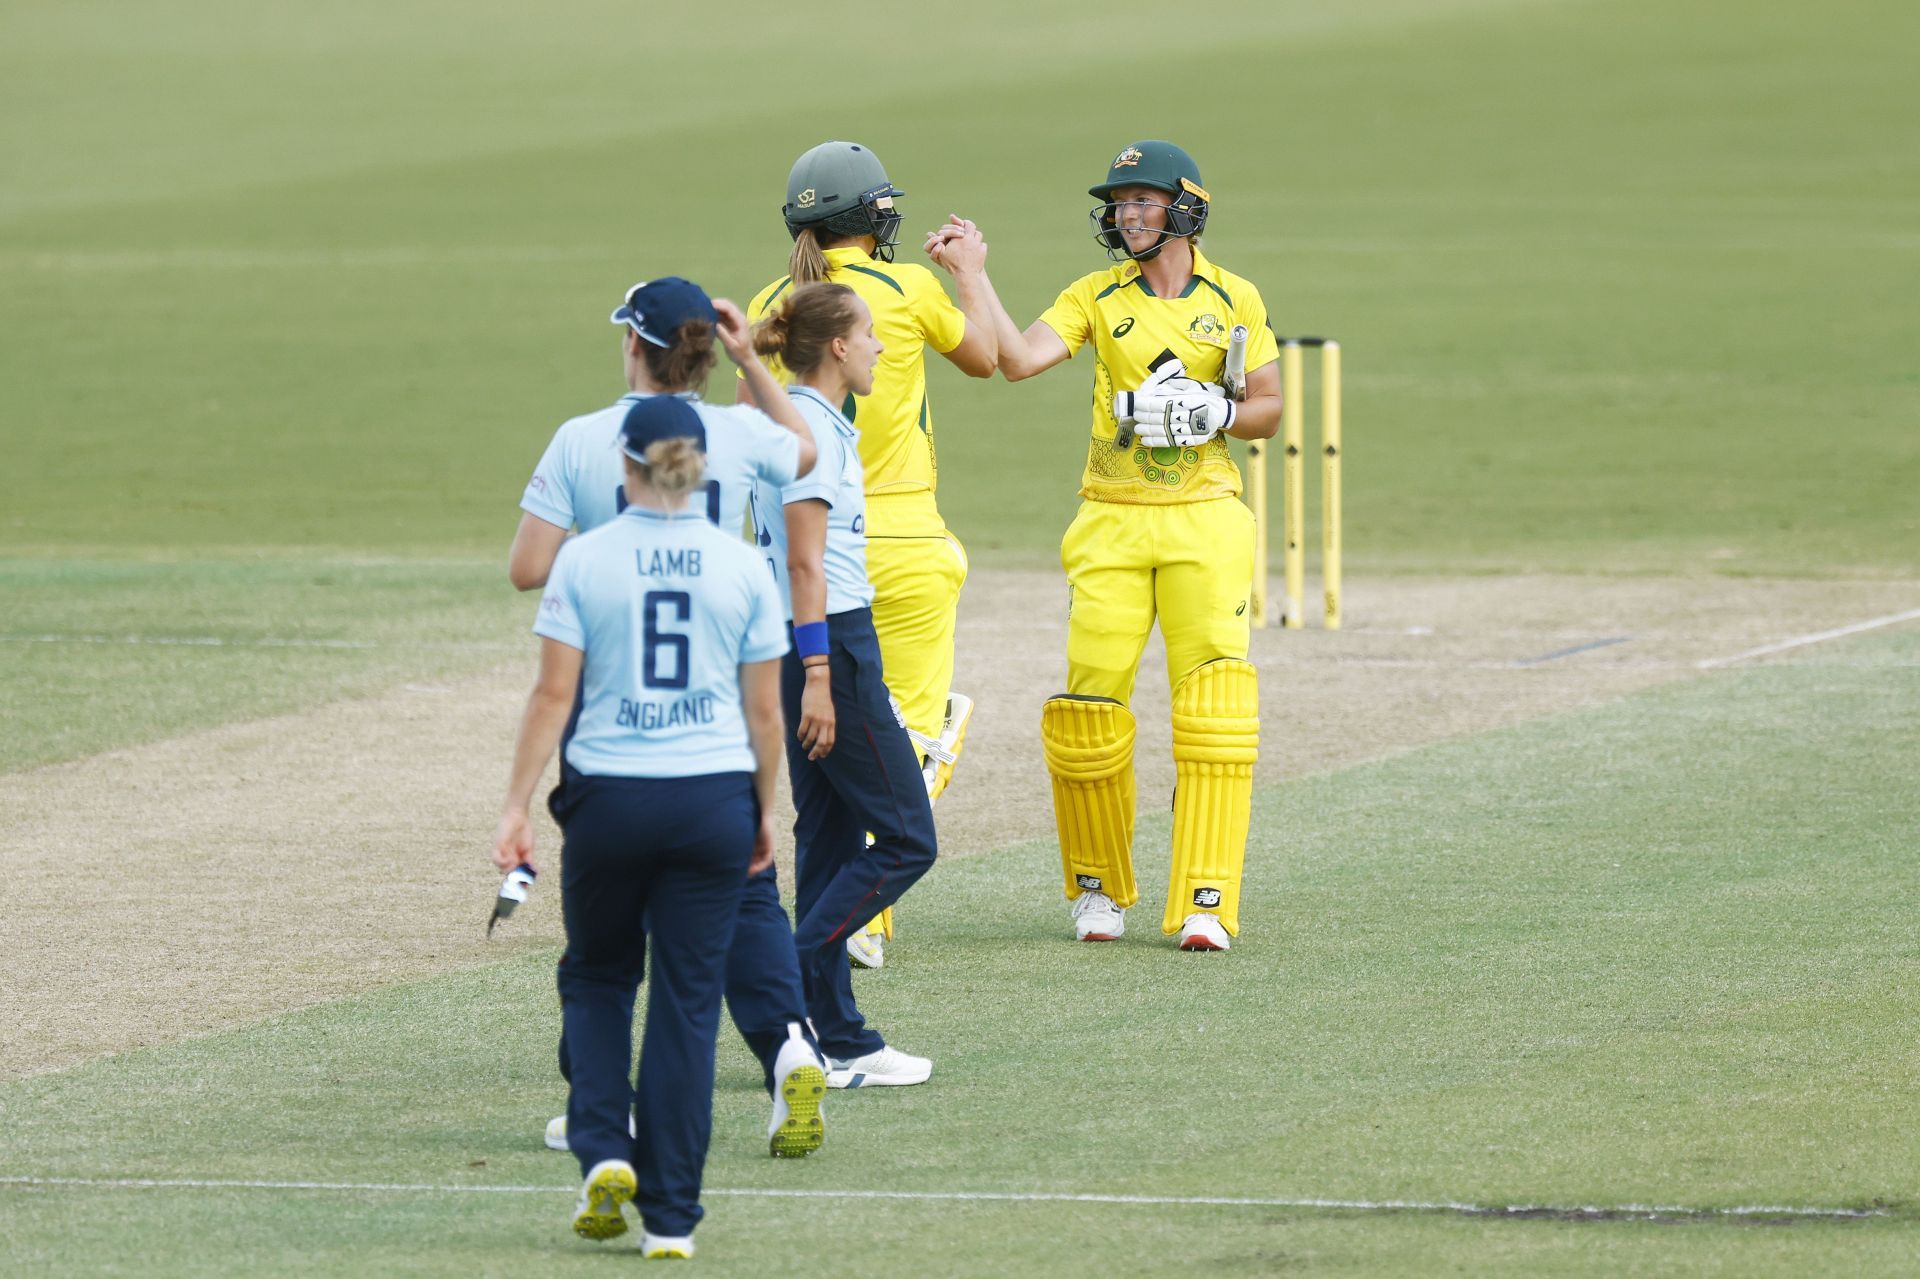 Australia v England - ODI Ashes Series: Game 3